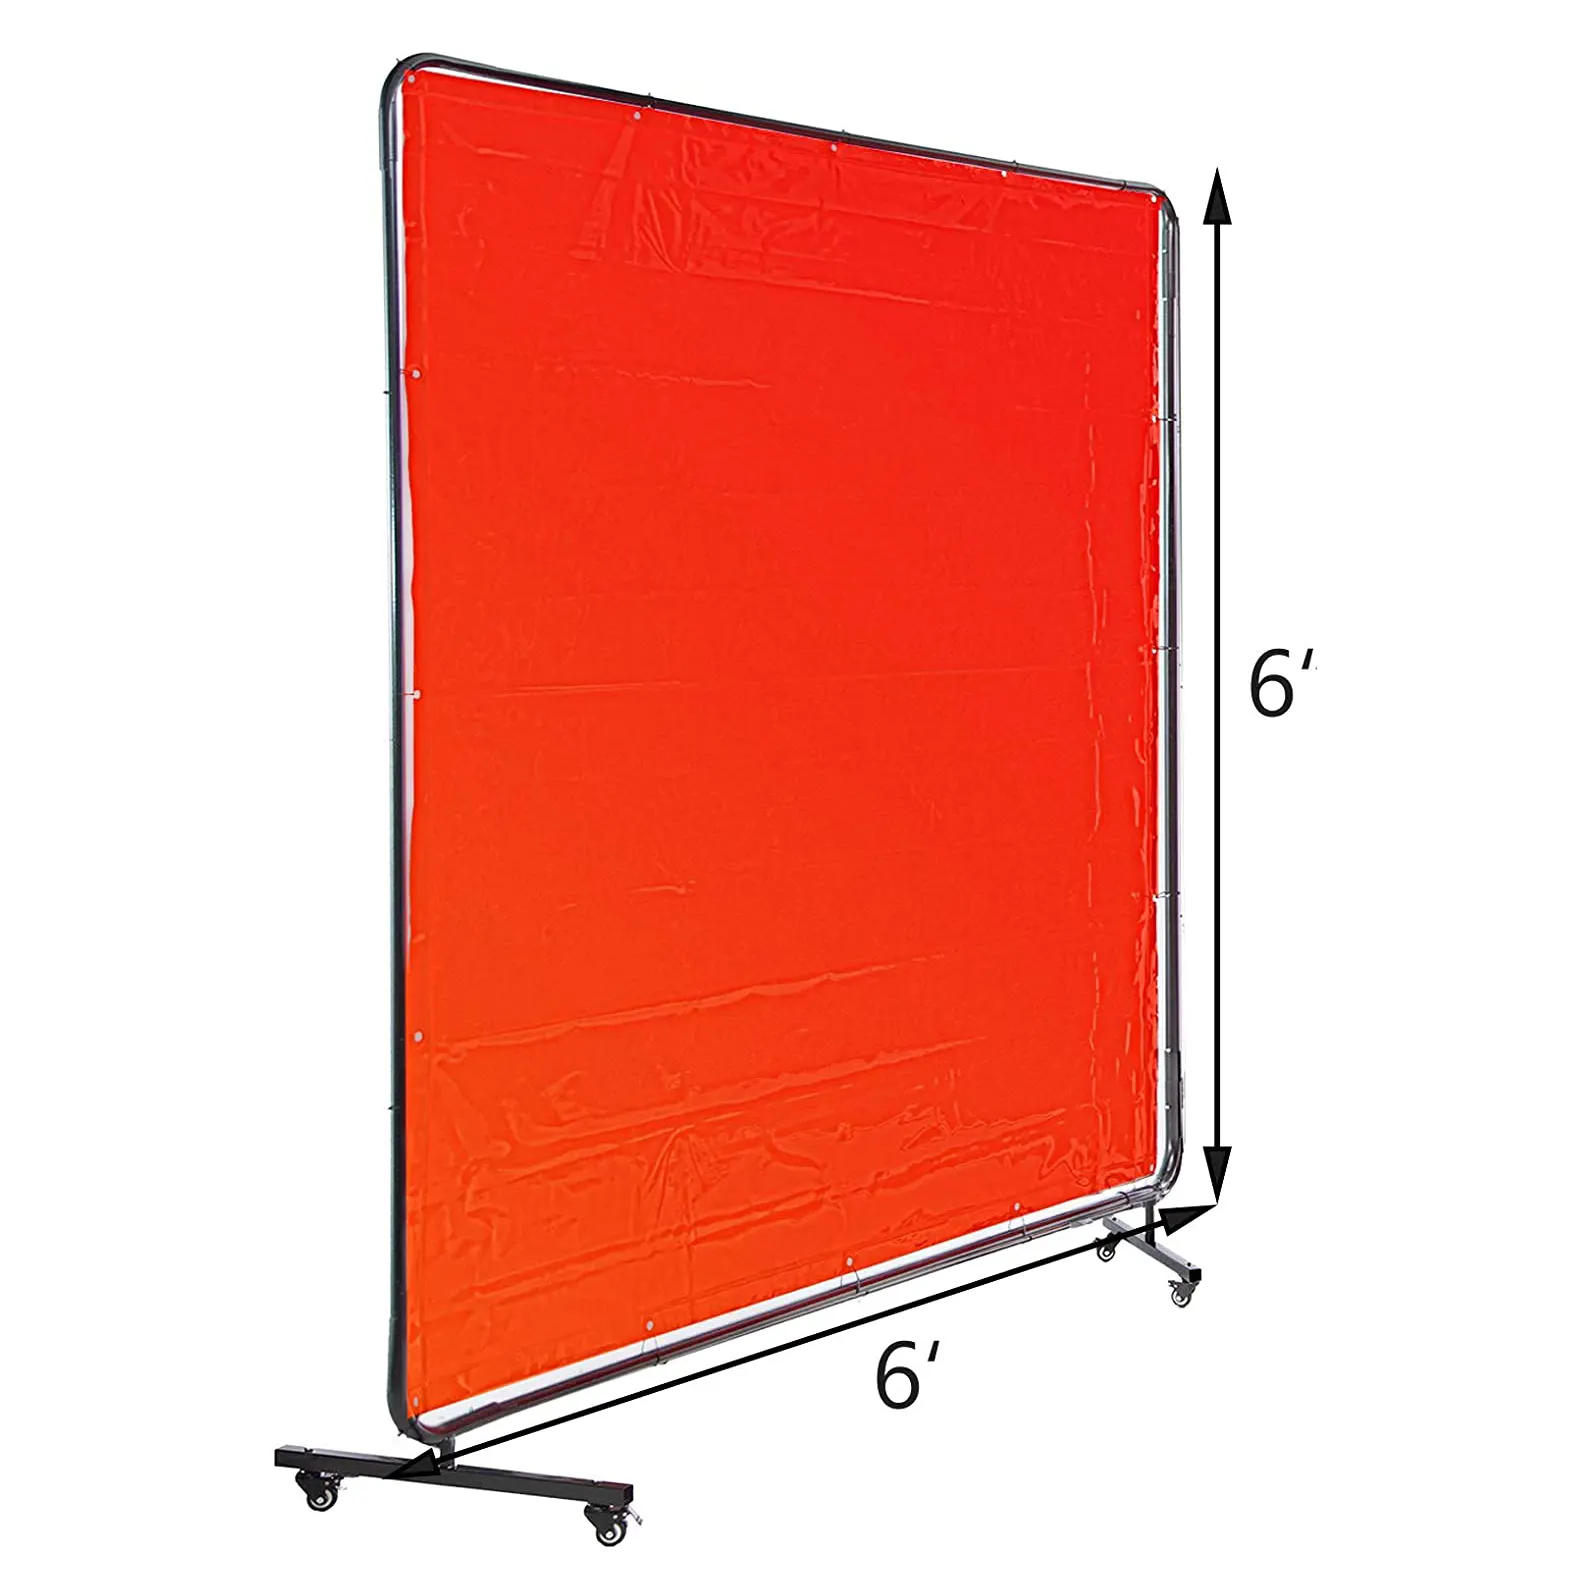 Schermo per saldatura 6 'x 6' tenda per saldatura in PVC con protezione per saldatura quadrata con cremagliera in metallo